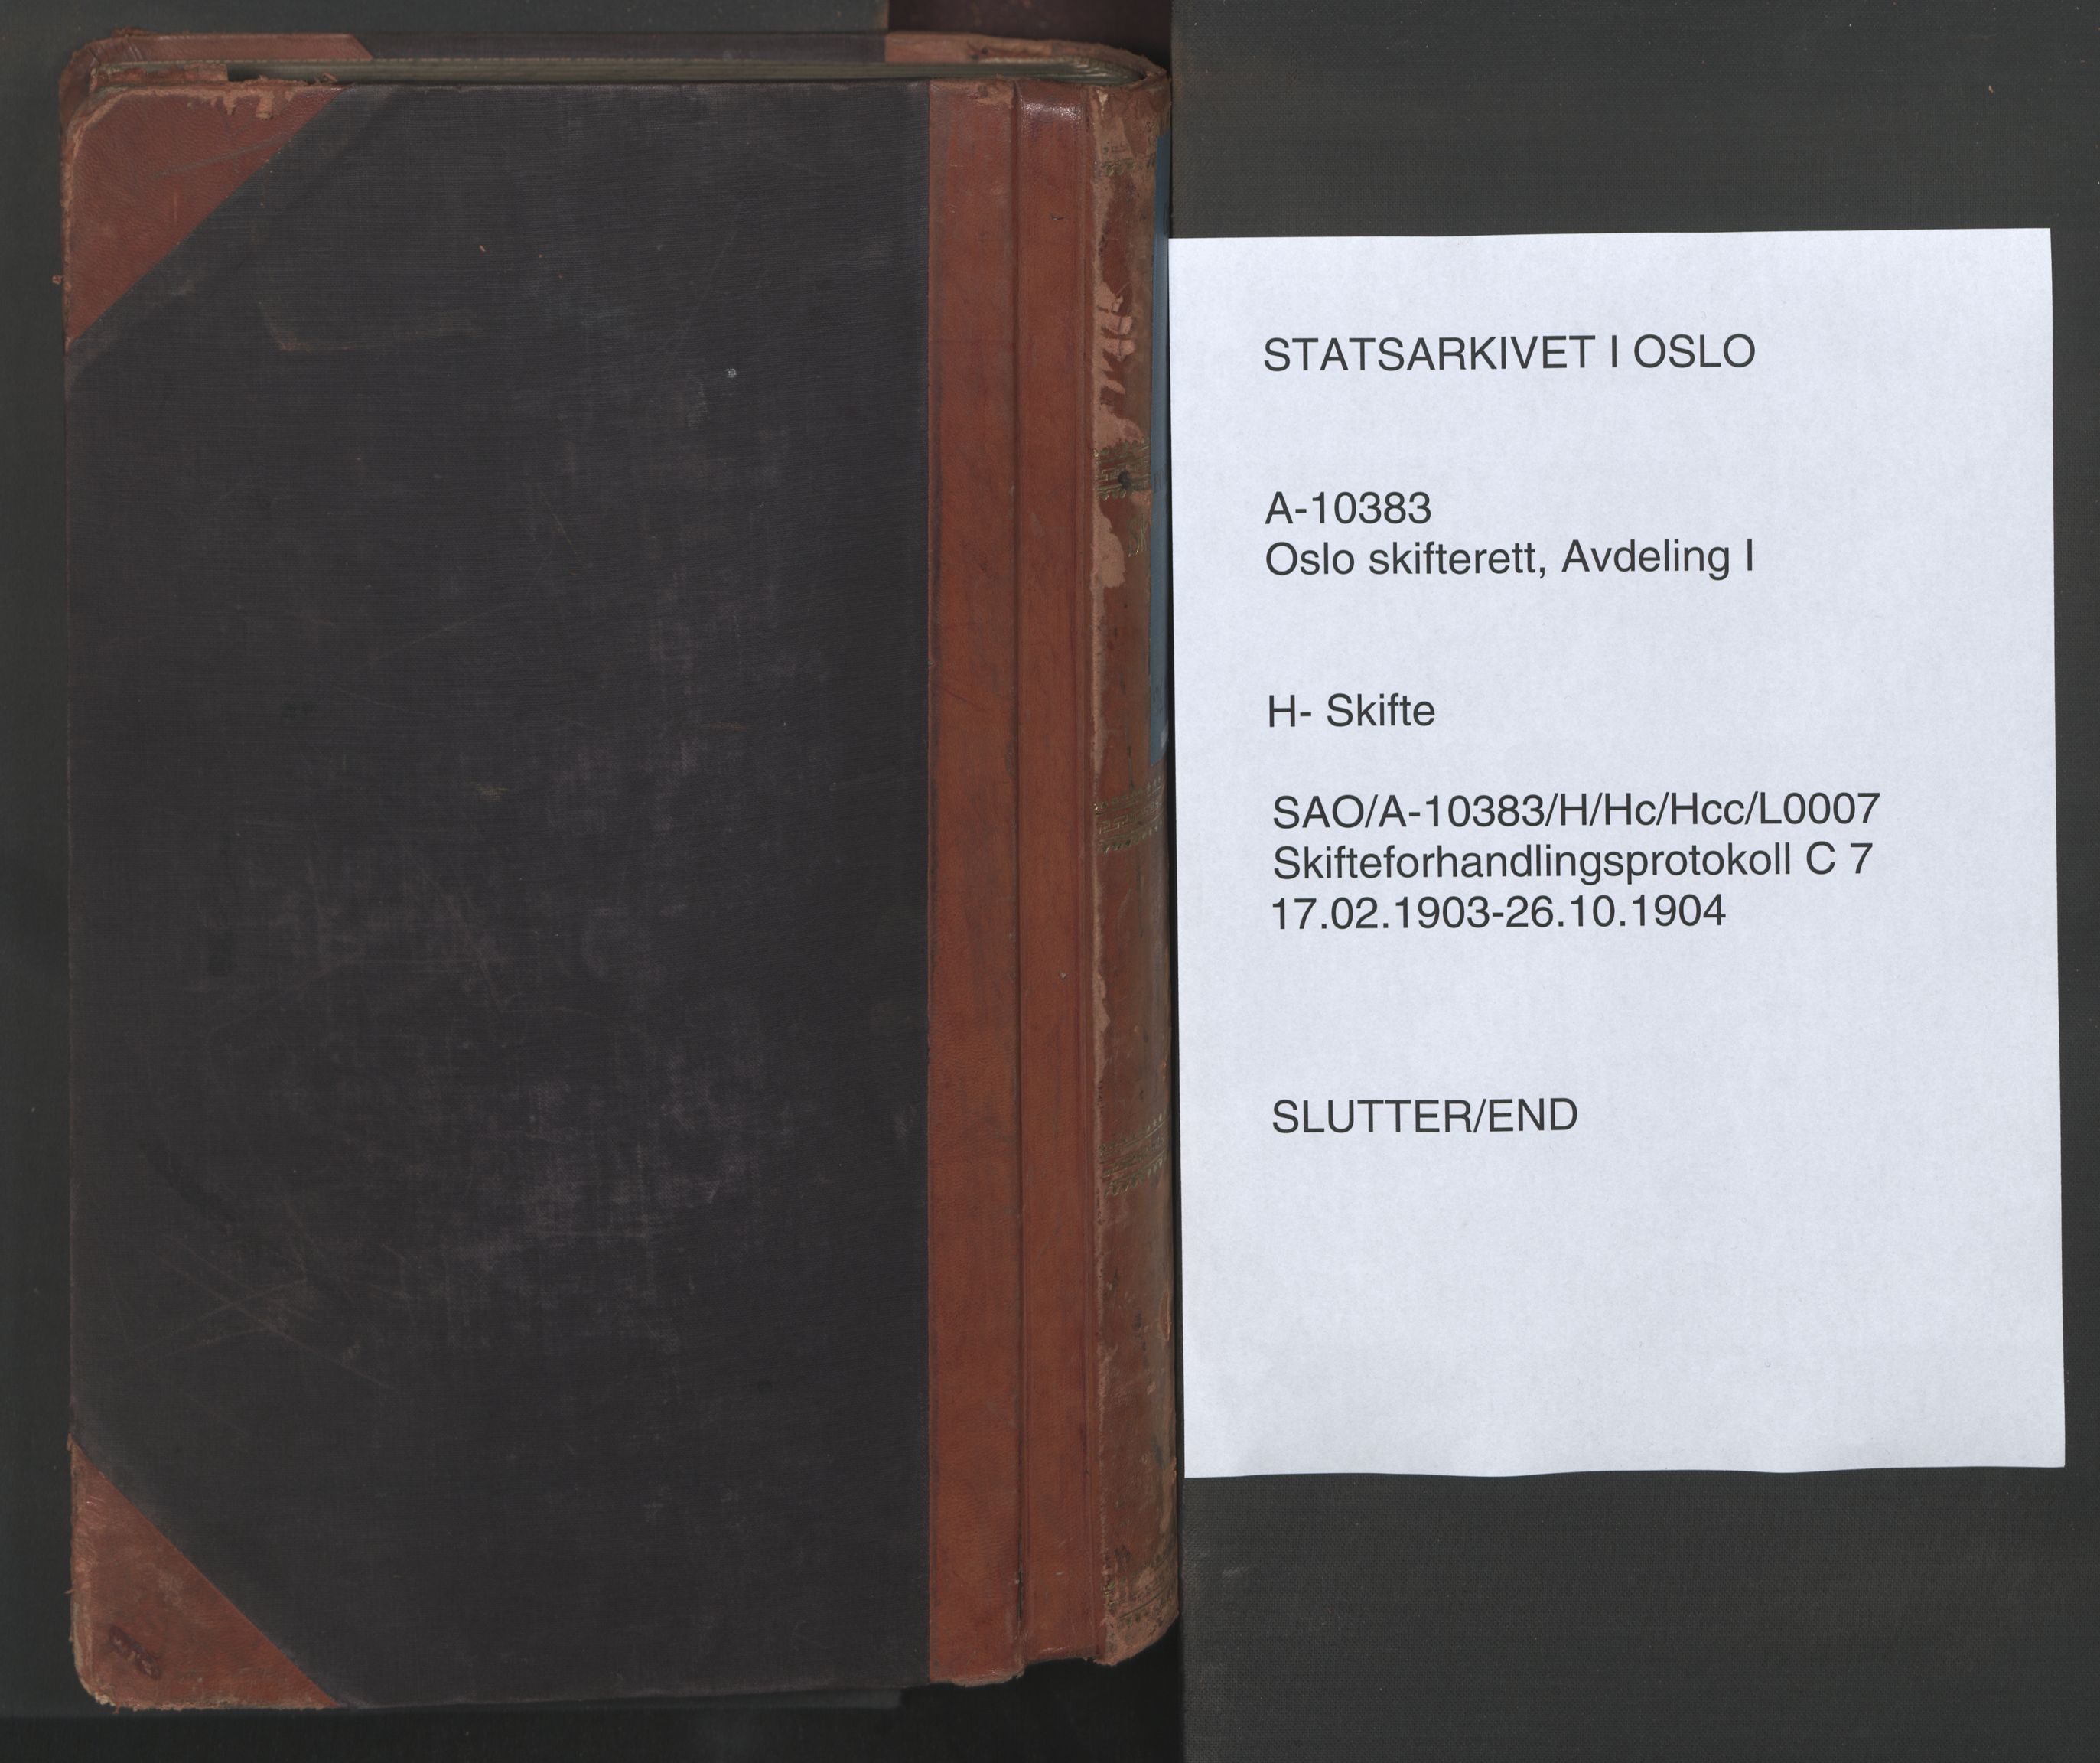 Oslo skifterett, SAO/A-10383/H/Hc/Hcc/L0007: Skifteforhandlingsprotokoll, 1903-1904